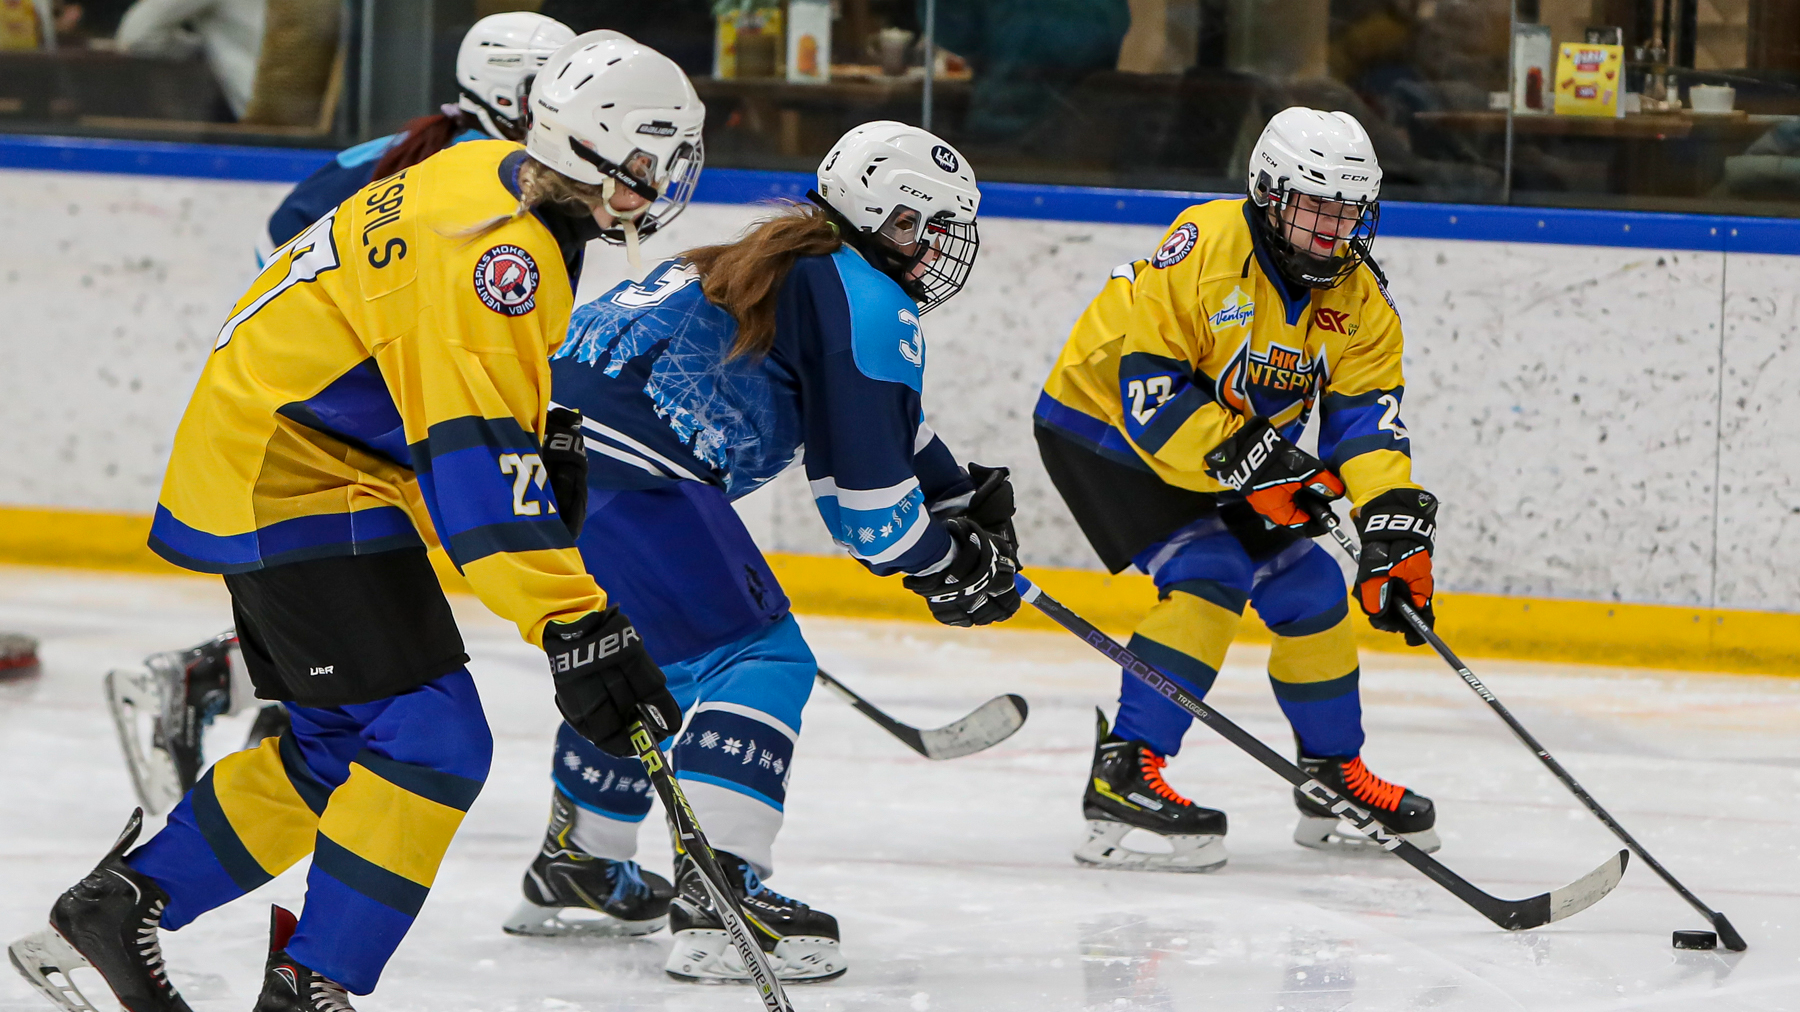 Nedēļas nogalē Rīgā norisināsies Baltijas un Latvijas čempionāta izslēgšanas spēļu finālposmi hokejā sievietēm